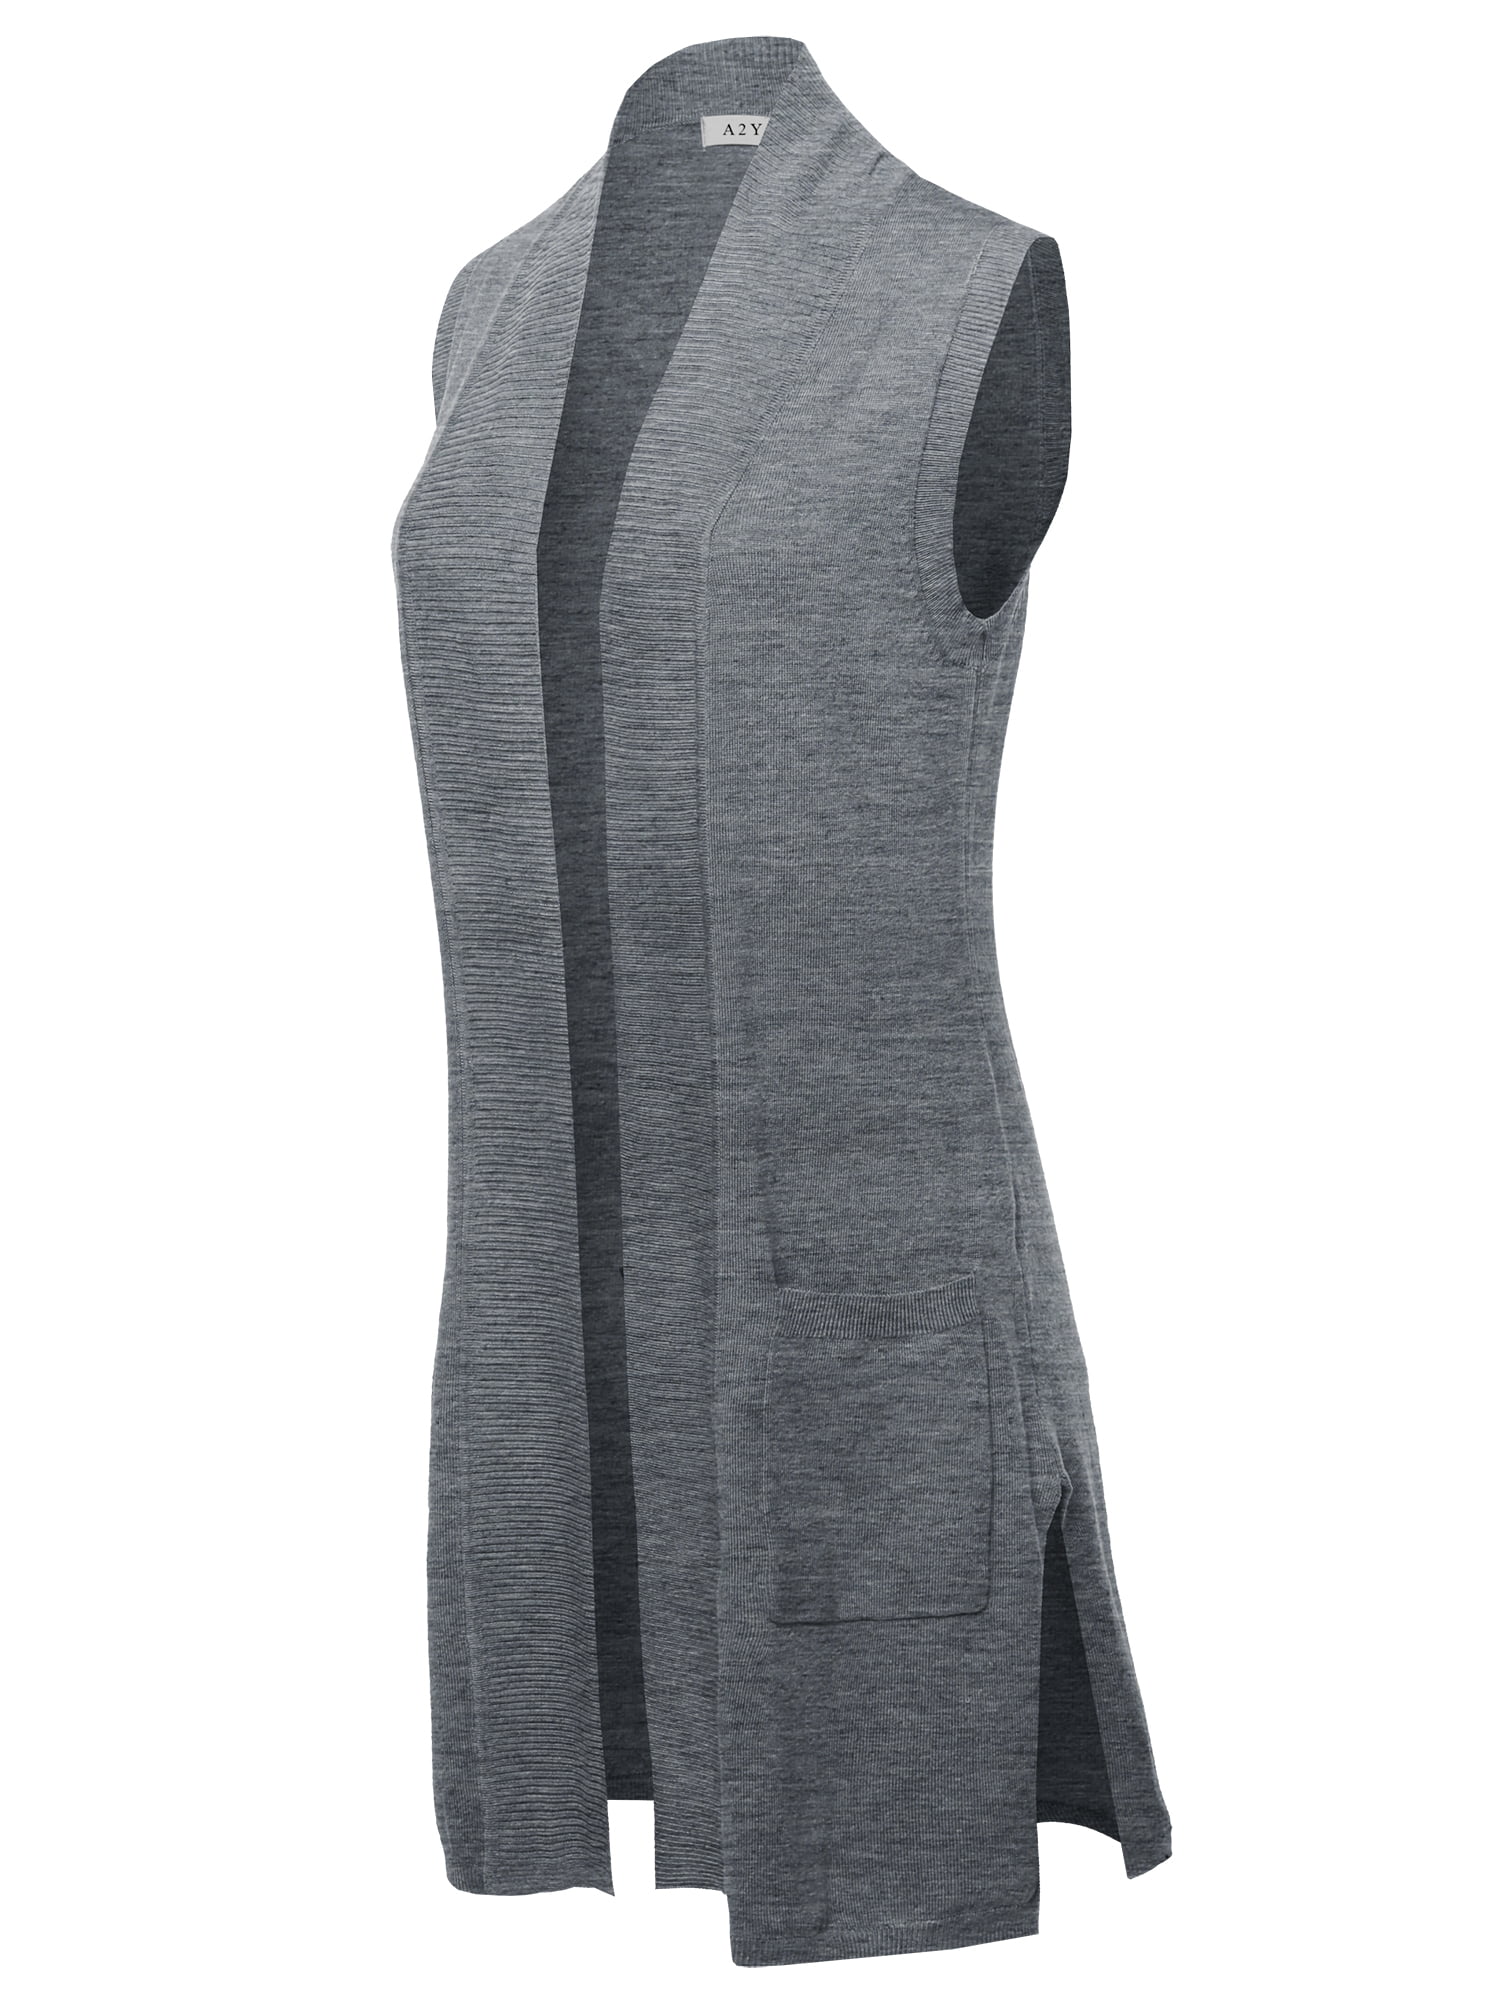 A2Y Women's Open Front Long Sleeveless Draped Side Pockets Vest Knit Sweater  Dusty Pink L - Walmart.com